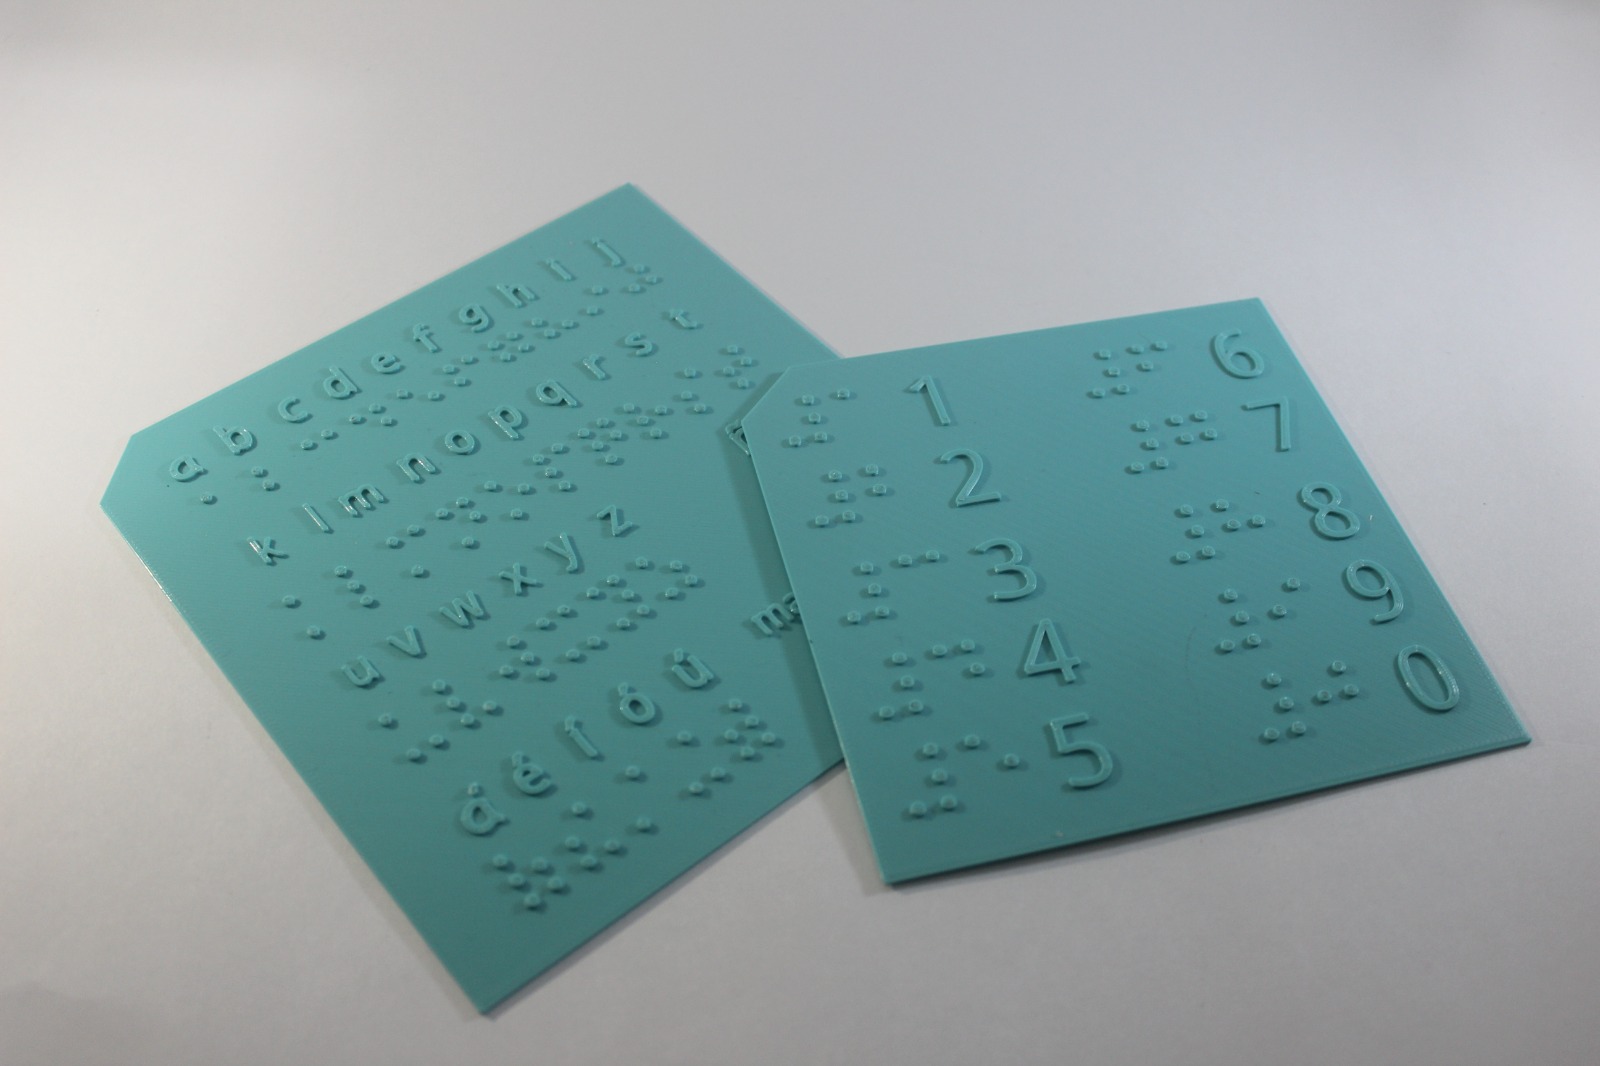 Se muestran dos tablas de color aguamarina con relieve mostrando las letras latinas, en la tabla izquierda, y los números, en la tabla derecha, ambas con su correspondiente en el sistema Braille.